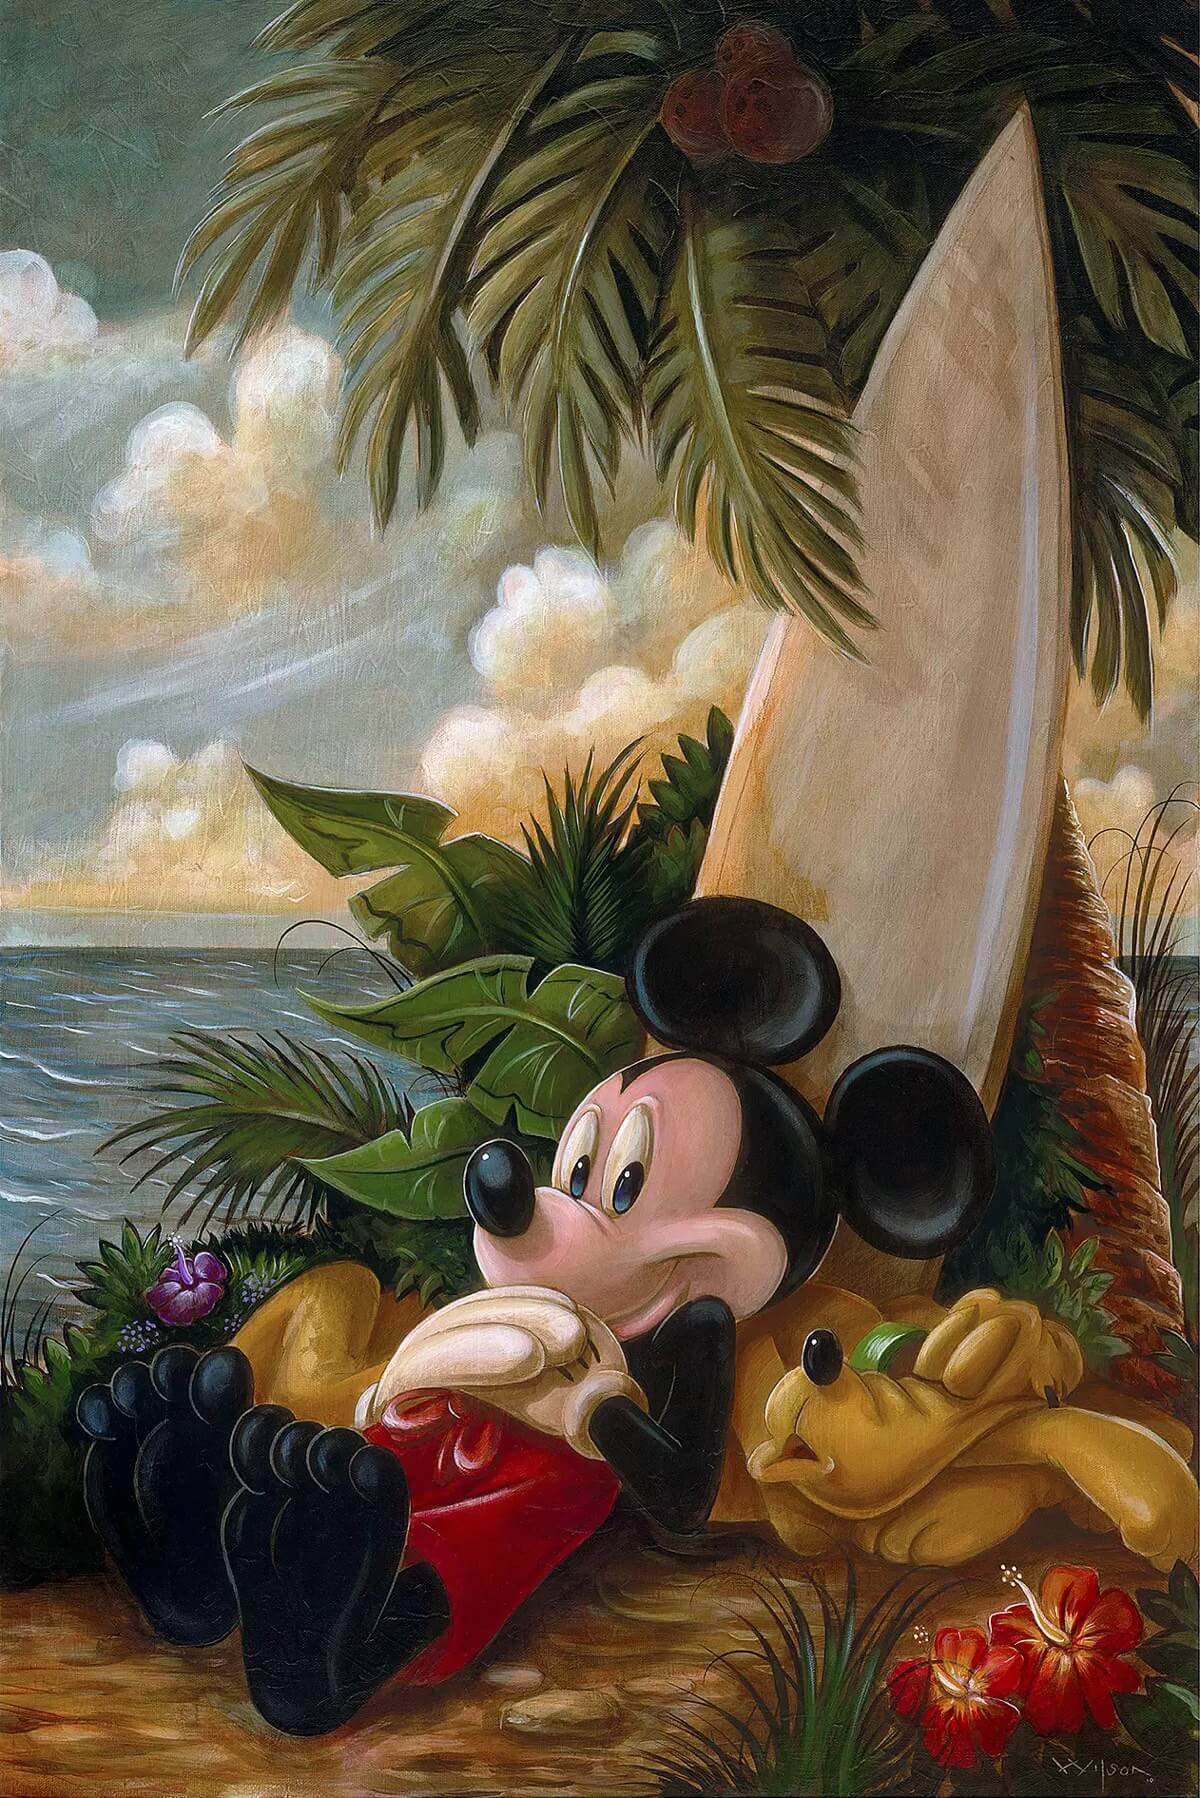 Sundown Surfer Mickey Mouse (Disney surf art) by Darren Wilson